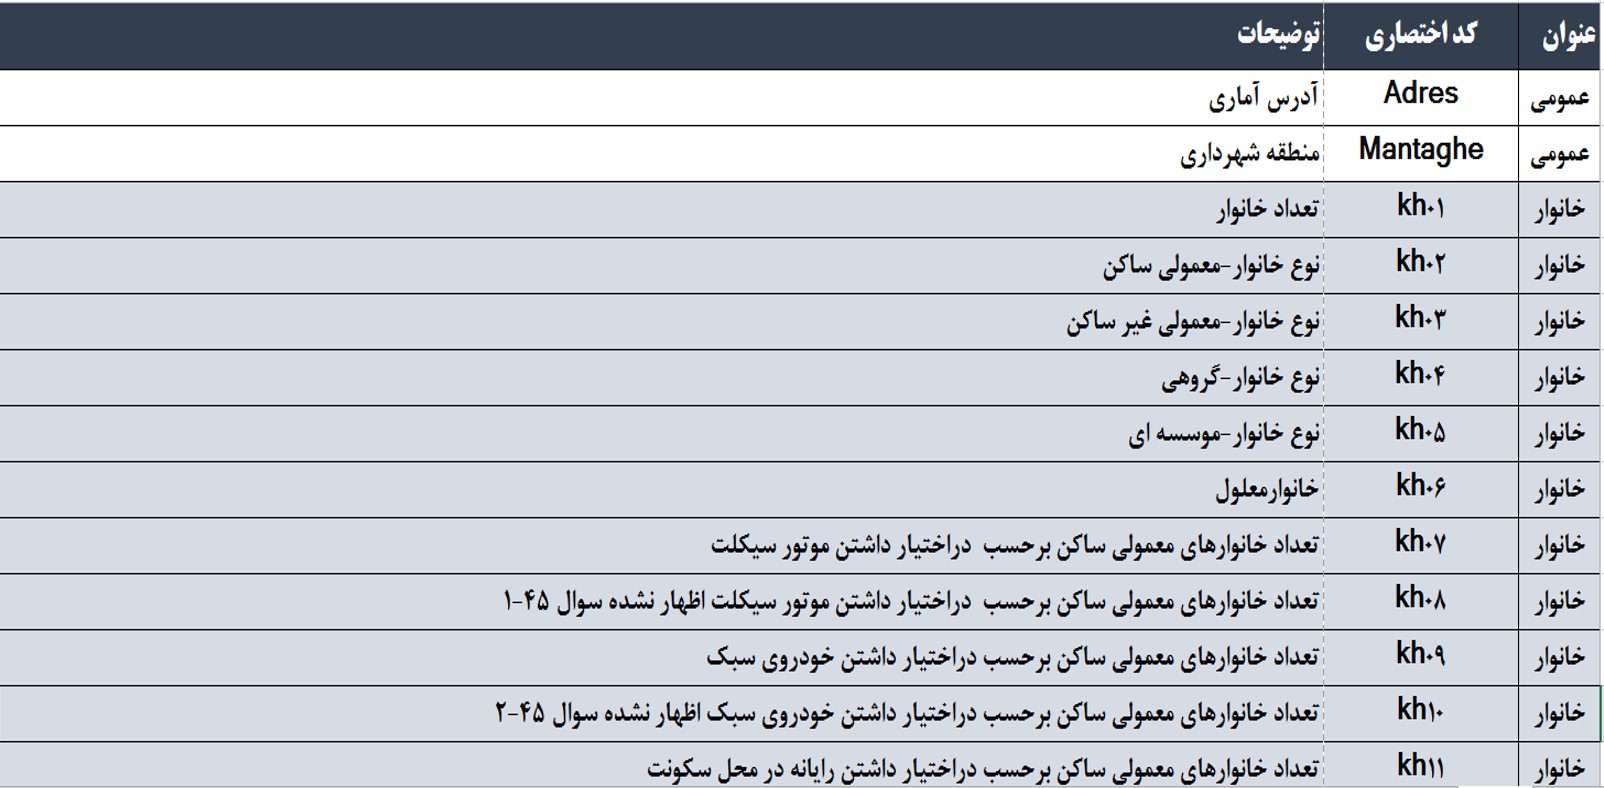 راهنمای کدهای مربوط به بلوک های آماری شهر تهران سال 90